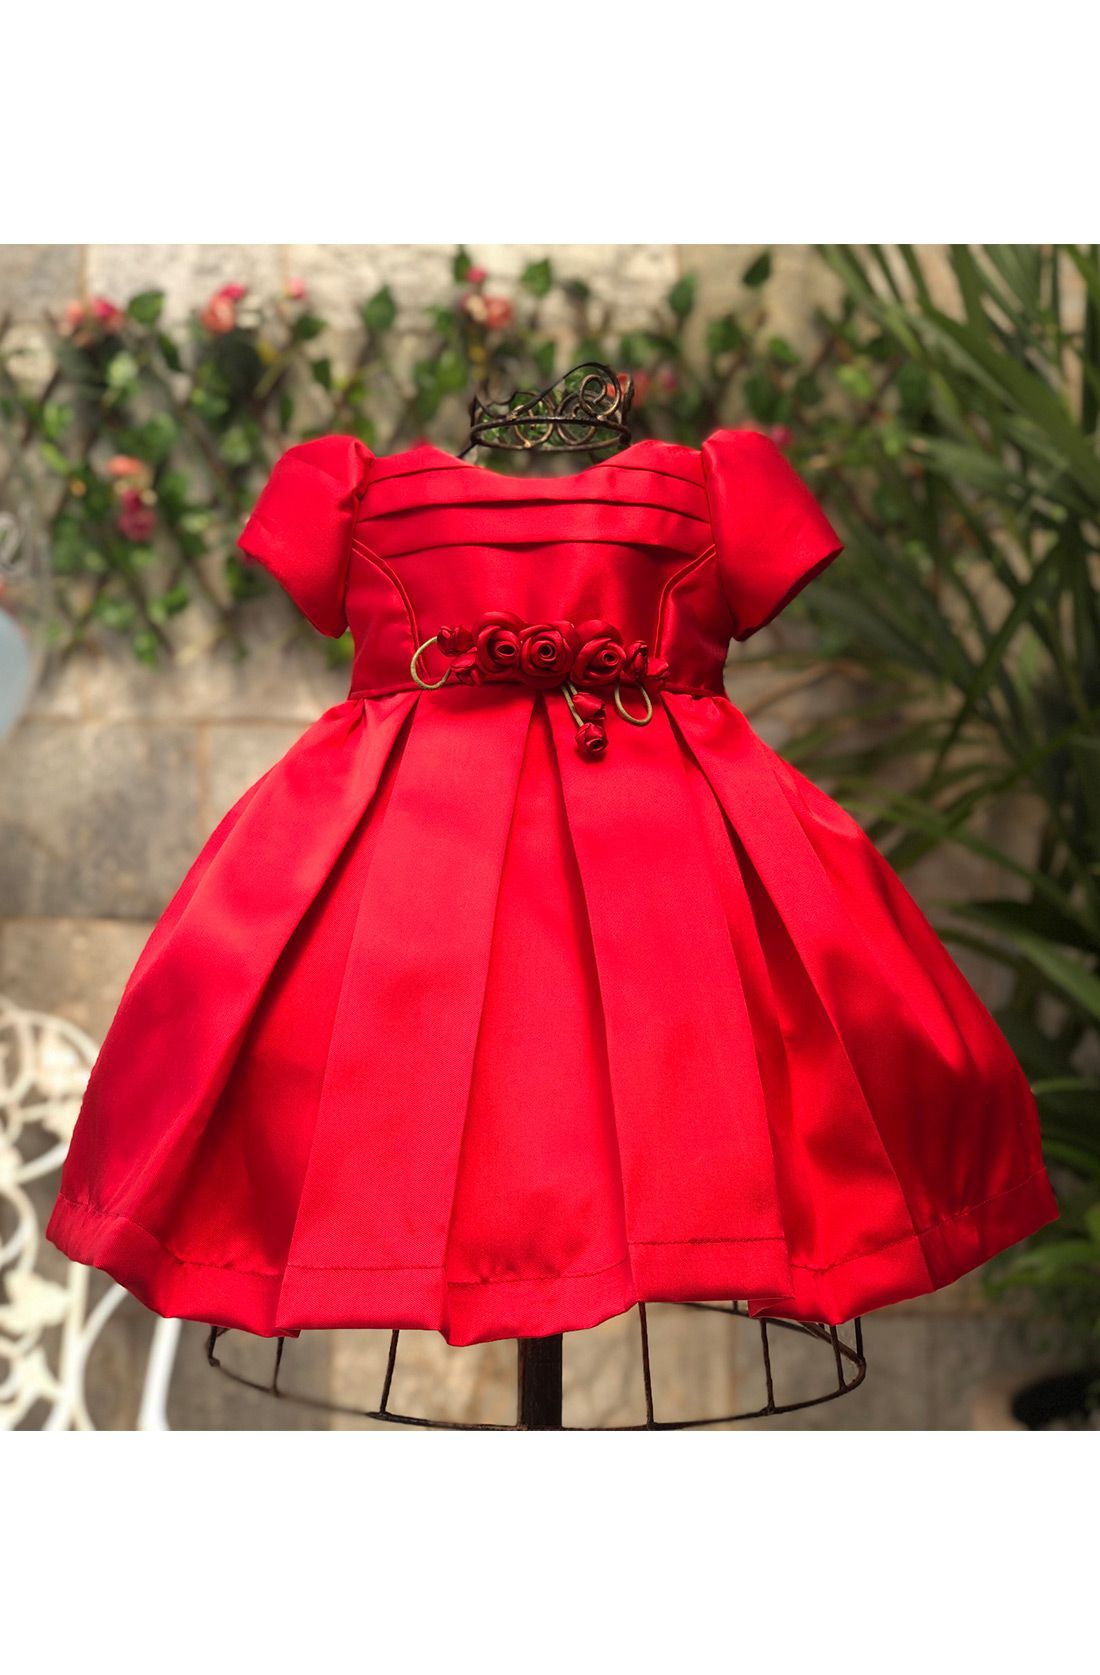 vestido de festa infantil luxo vermelho e preto